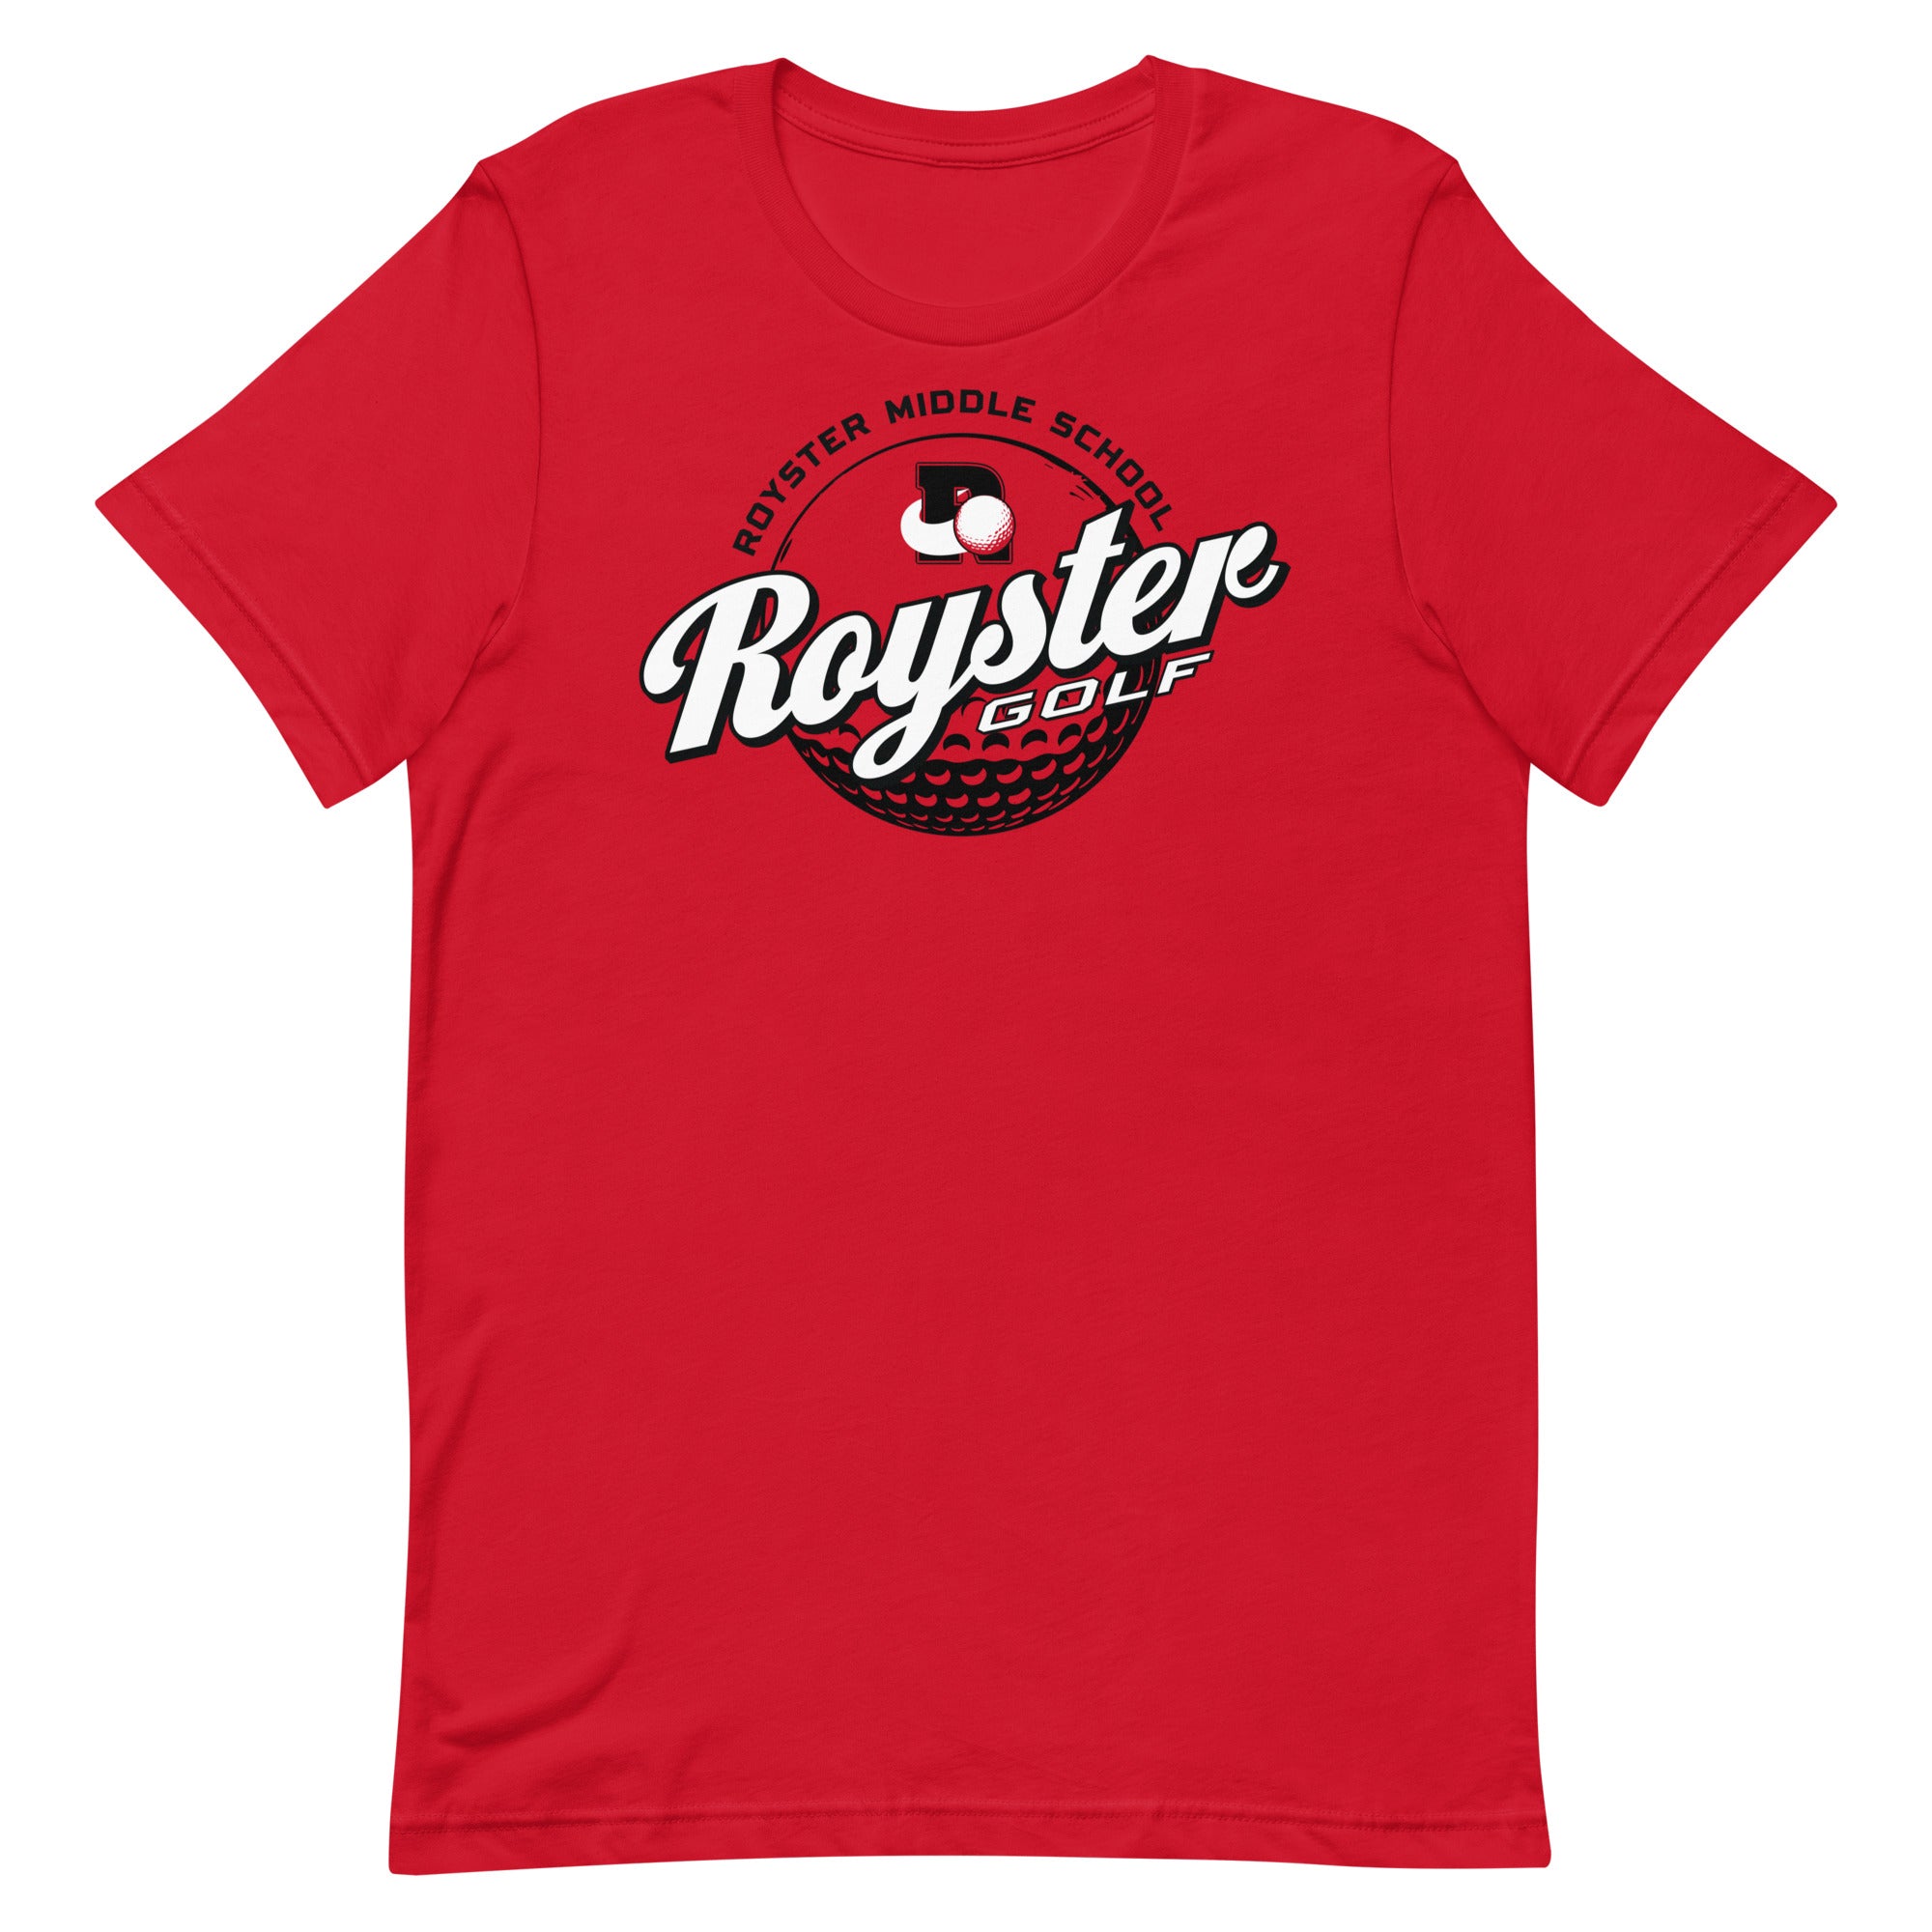 Royster Rockets Golf Unisex Staple T-Shirt